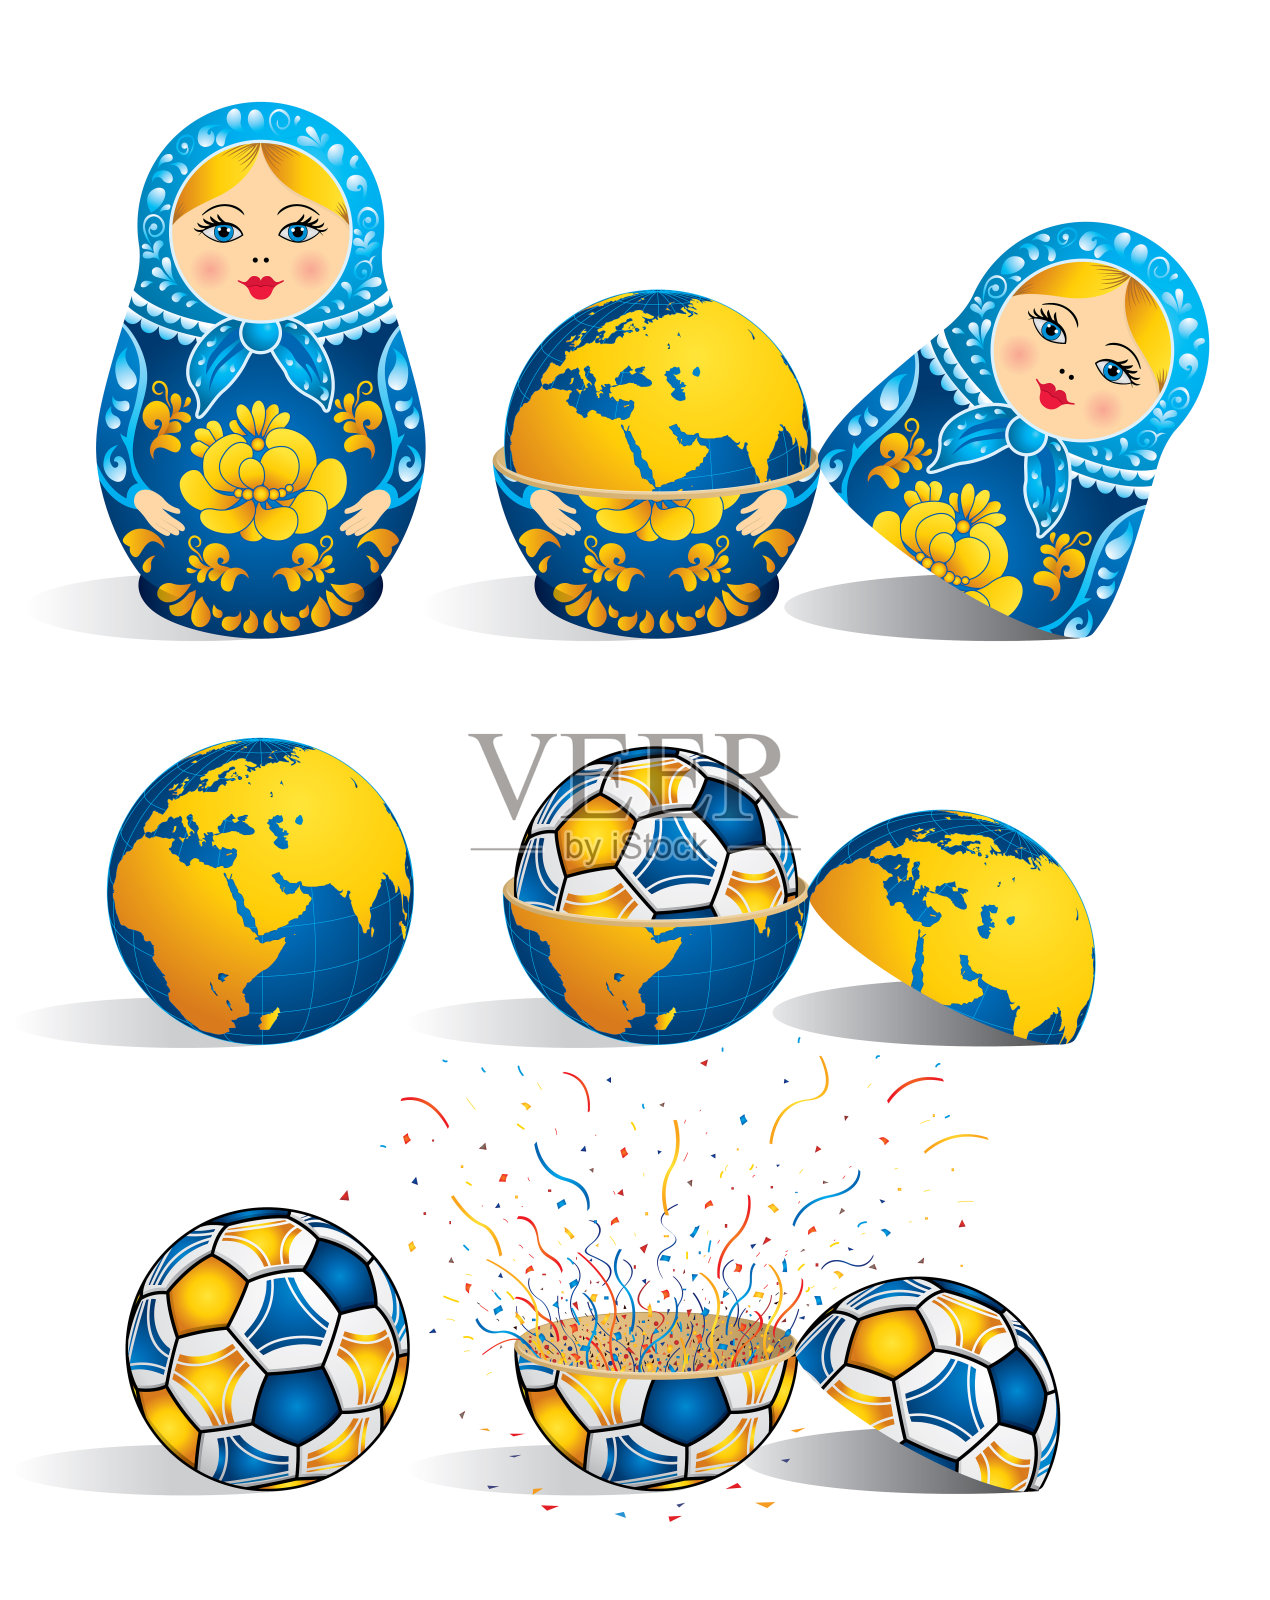 蓝色的俄罗斯套娃里面有一个星球，世界里面有一个足球，球里面有爆炸的五彩纸屑。俄罗斯套娃，又称俄罗斯套娃，是一套尺寸递减的木制玩偶插画图片素材